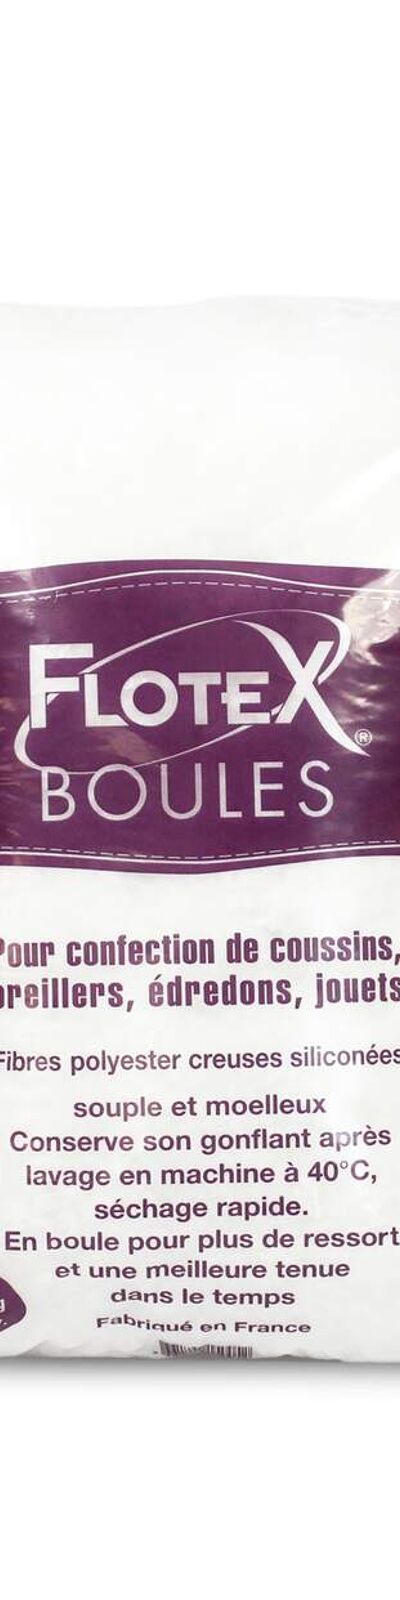 Rembourrage Flotex boules sac 1 kg Fibre Polyester Aucun traitement Boules